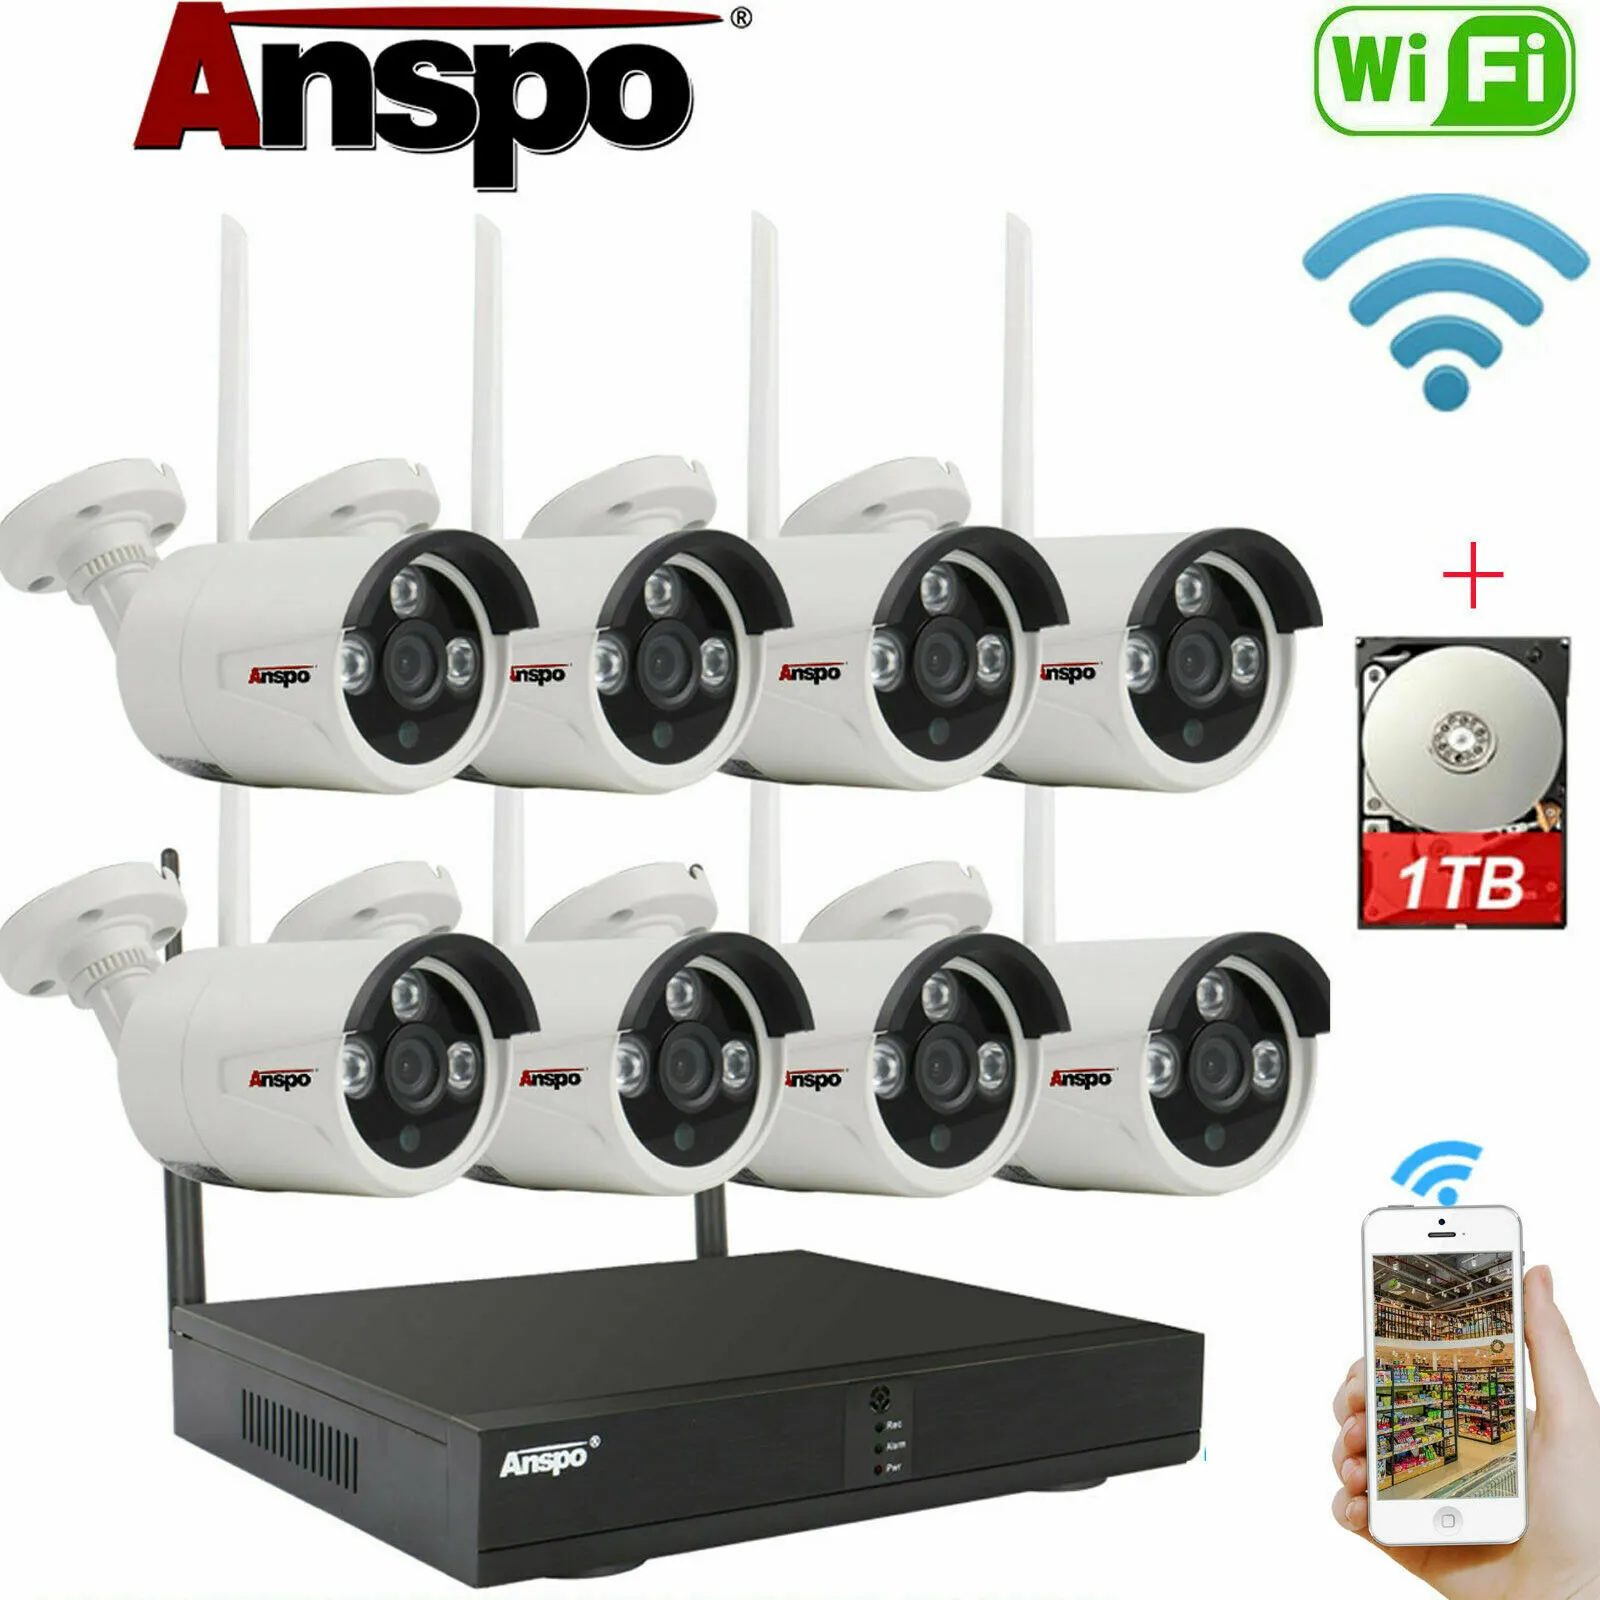 Sistema de Câmera Anspo 8CH Segurança Wireless WiFi Camera Kit IR-Cut Night Vision CCTV Surveillance Home NVR com disco rígido de 1TB